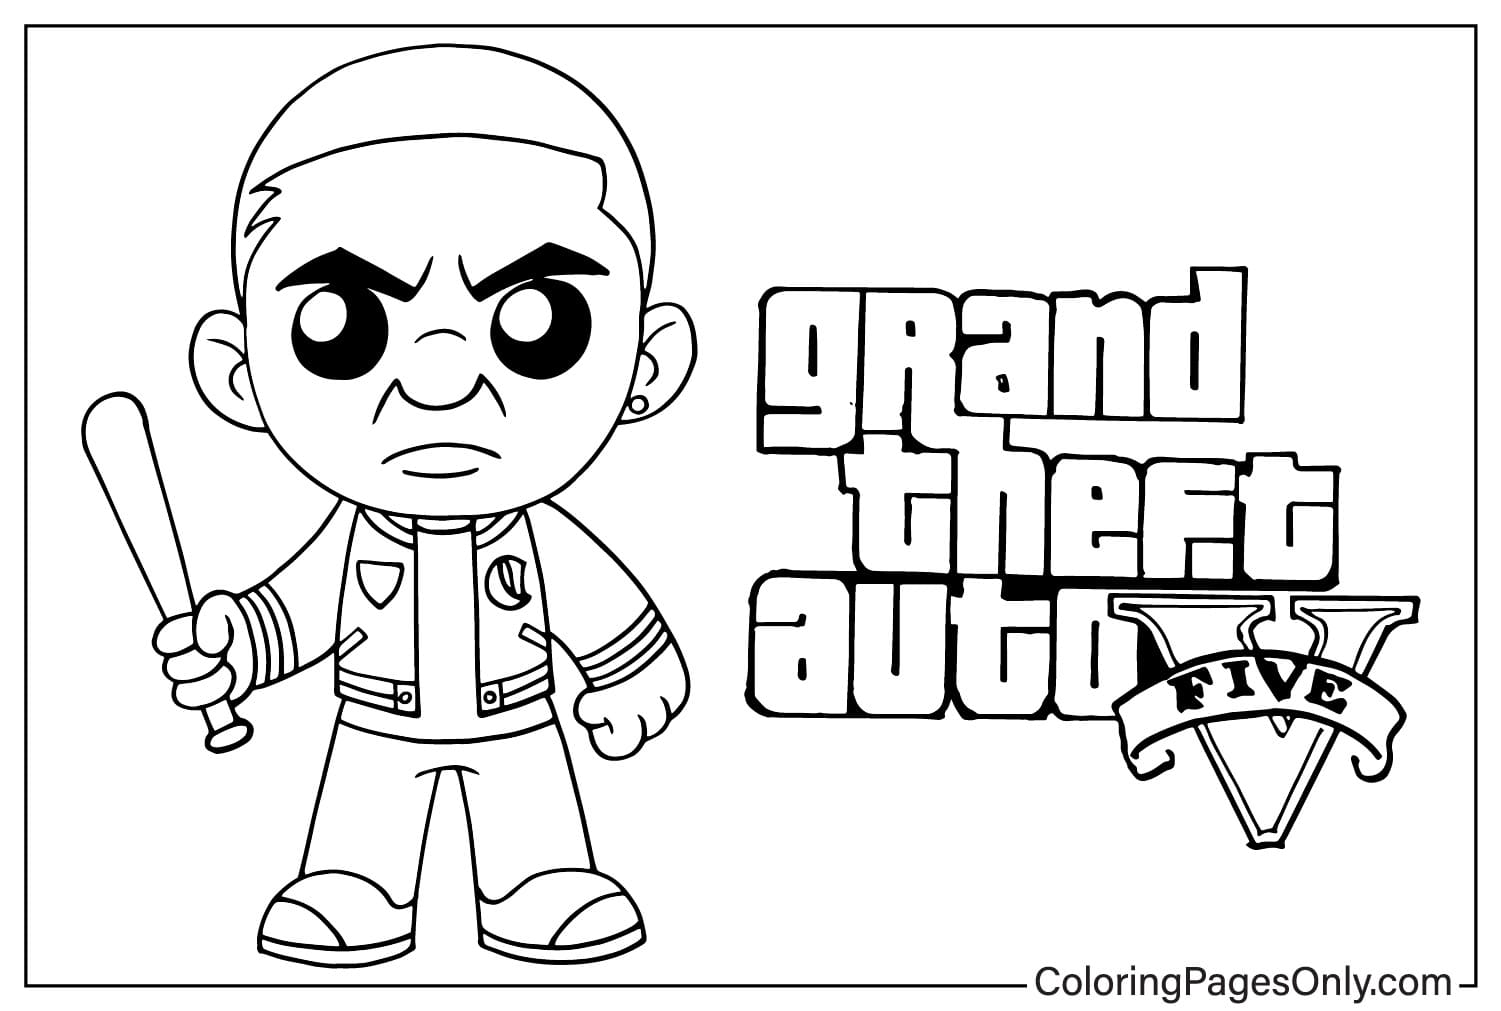 Grand Theft Auto V (GTA 5) Personagem Chibi de Grand Theft Auto V (GTA 5)